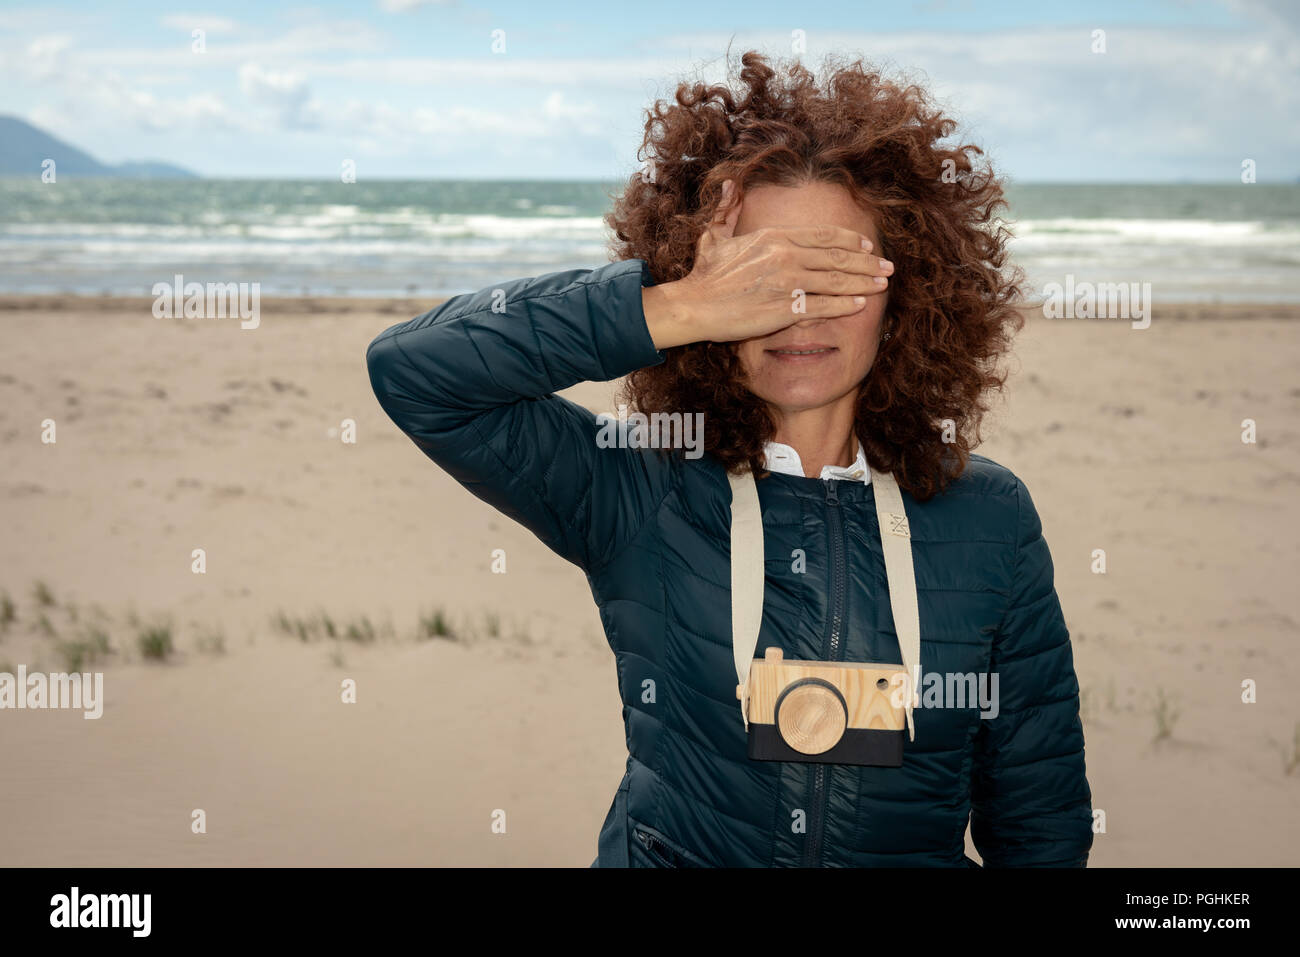 Junge schöne Frau mit roten lockigen Haar auf leeren Strand mit Holzspielzeug Foto Kamera posieren, während ihre Augen versteckt sich hinter der rechten Hand. Stockfoto